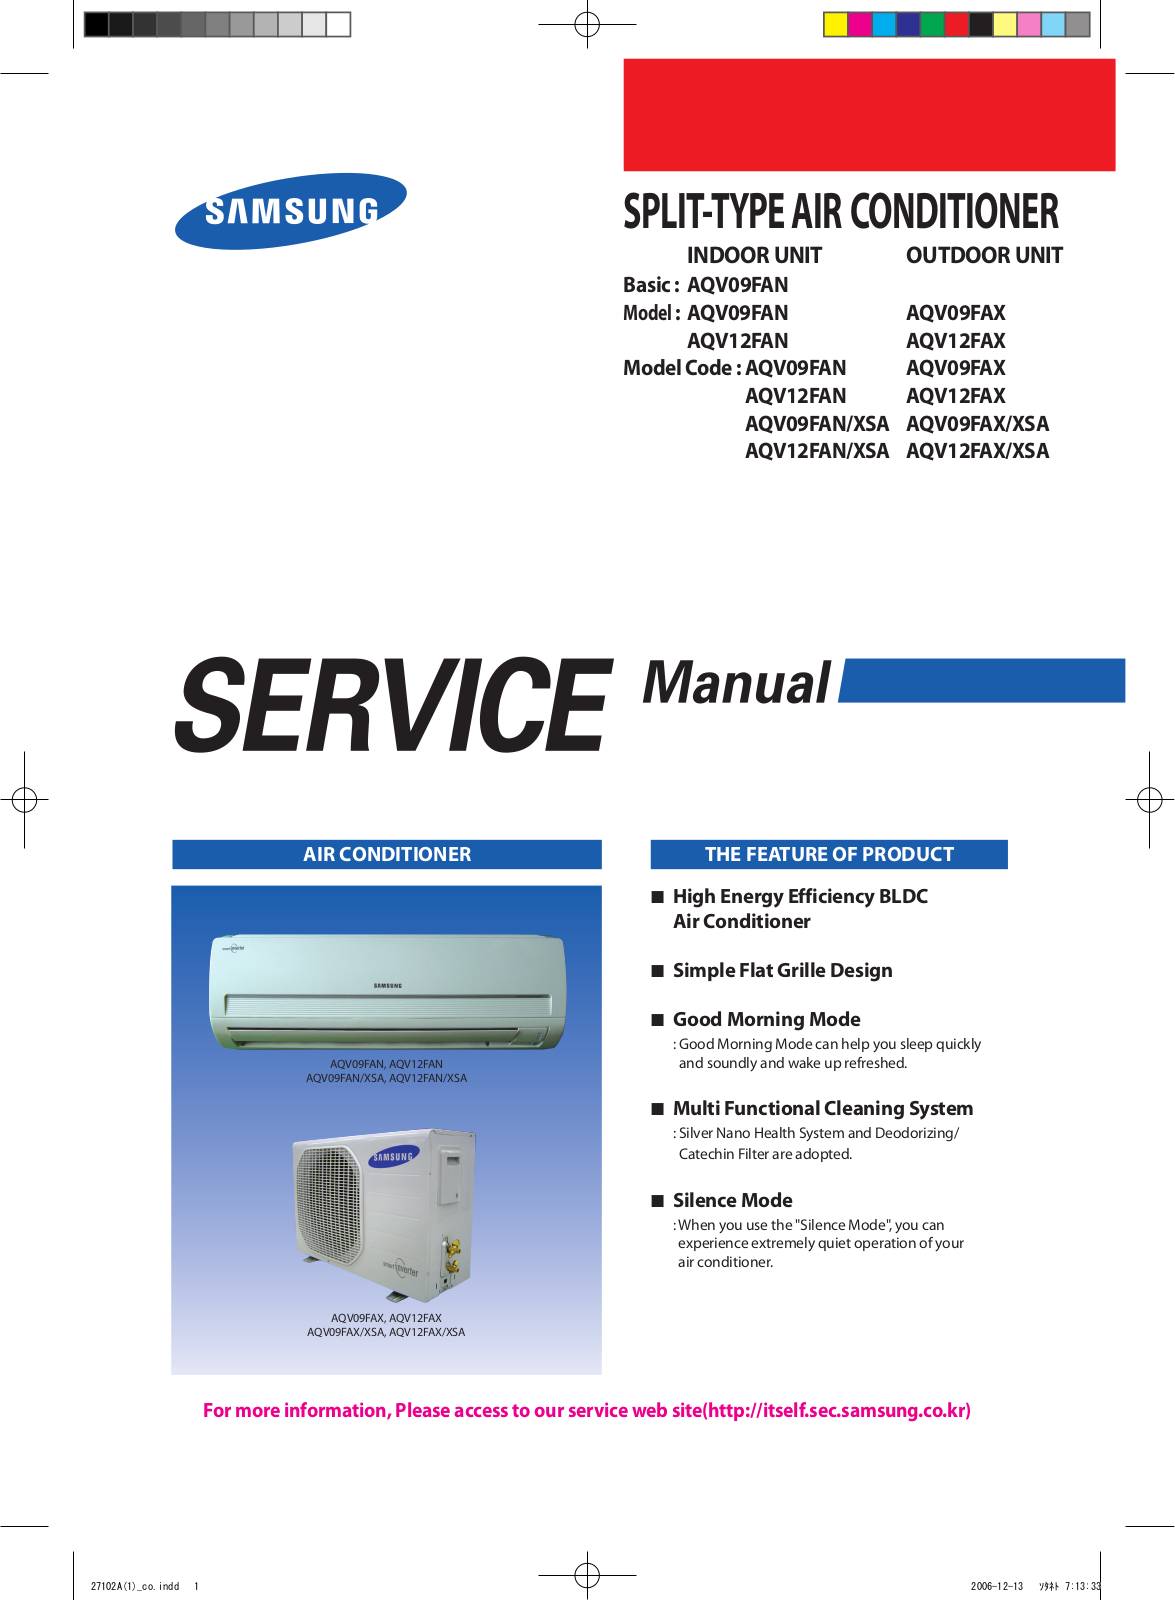 Samsung AQV09FAN, AQV09FAX, AQV12FAN, AQV12FAX Service Manual